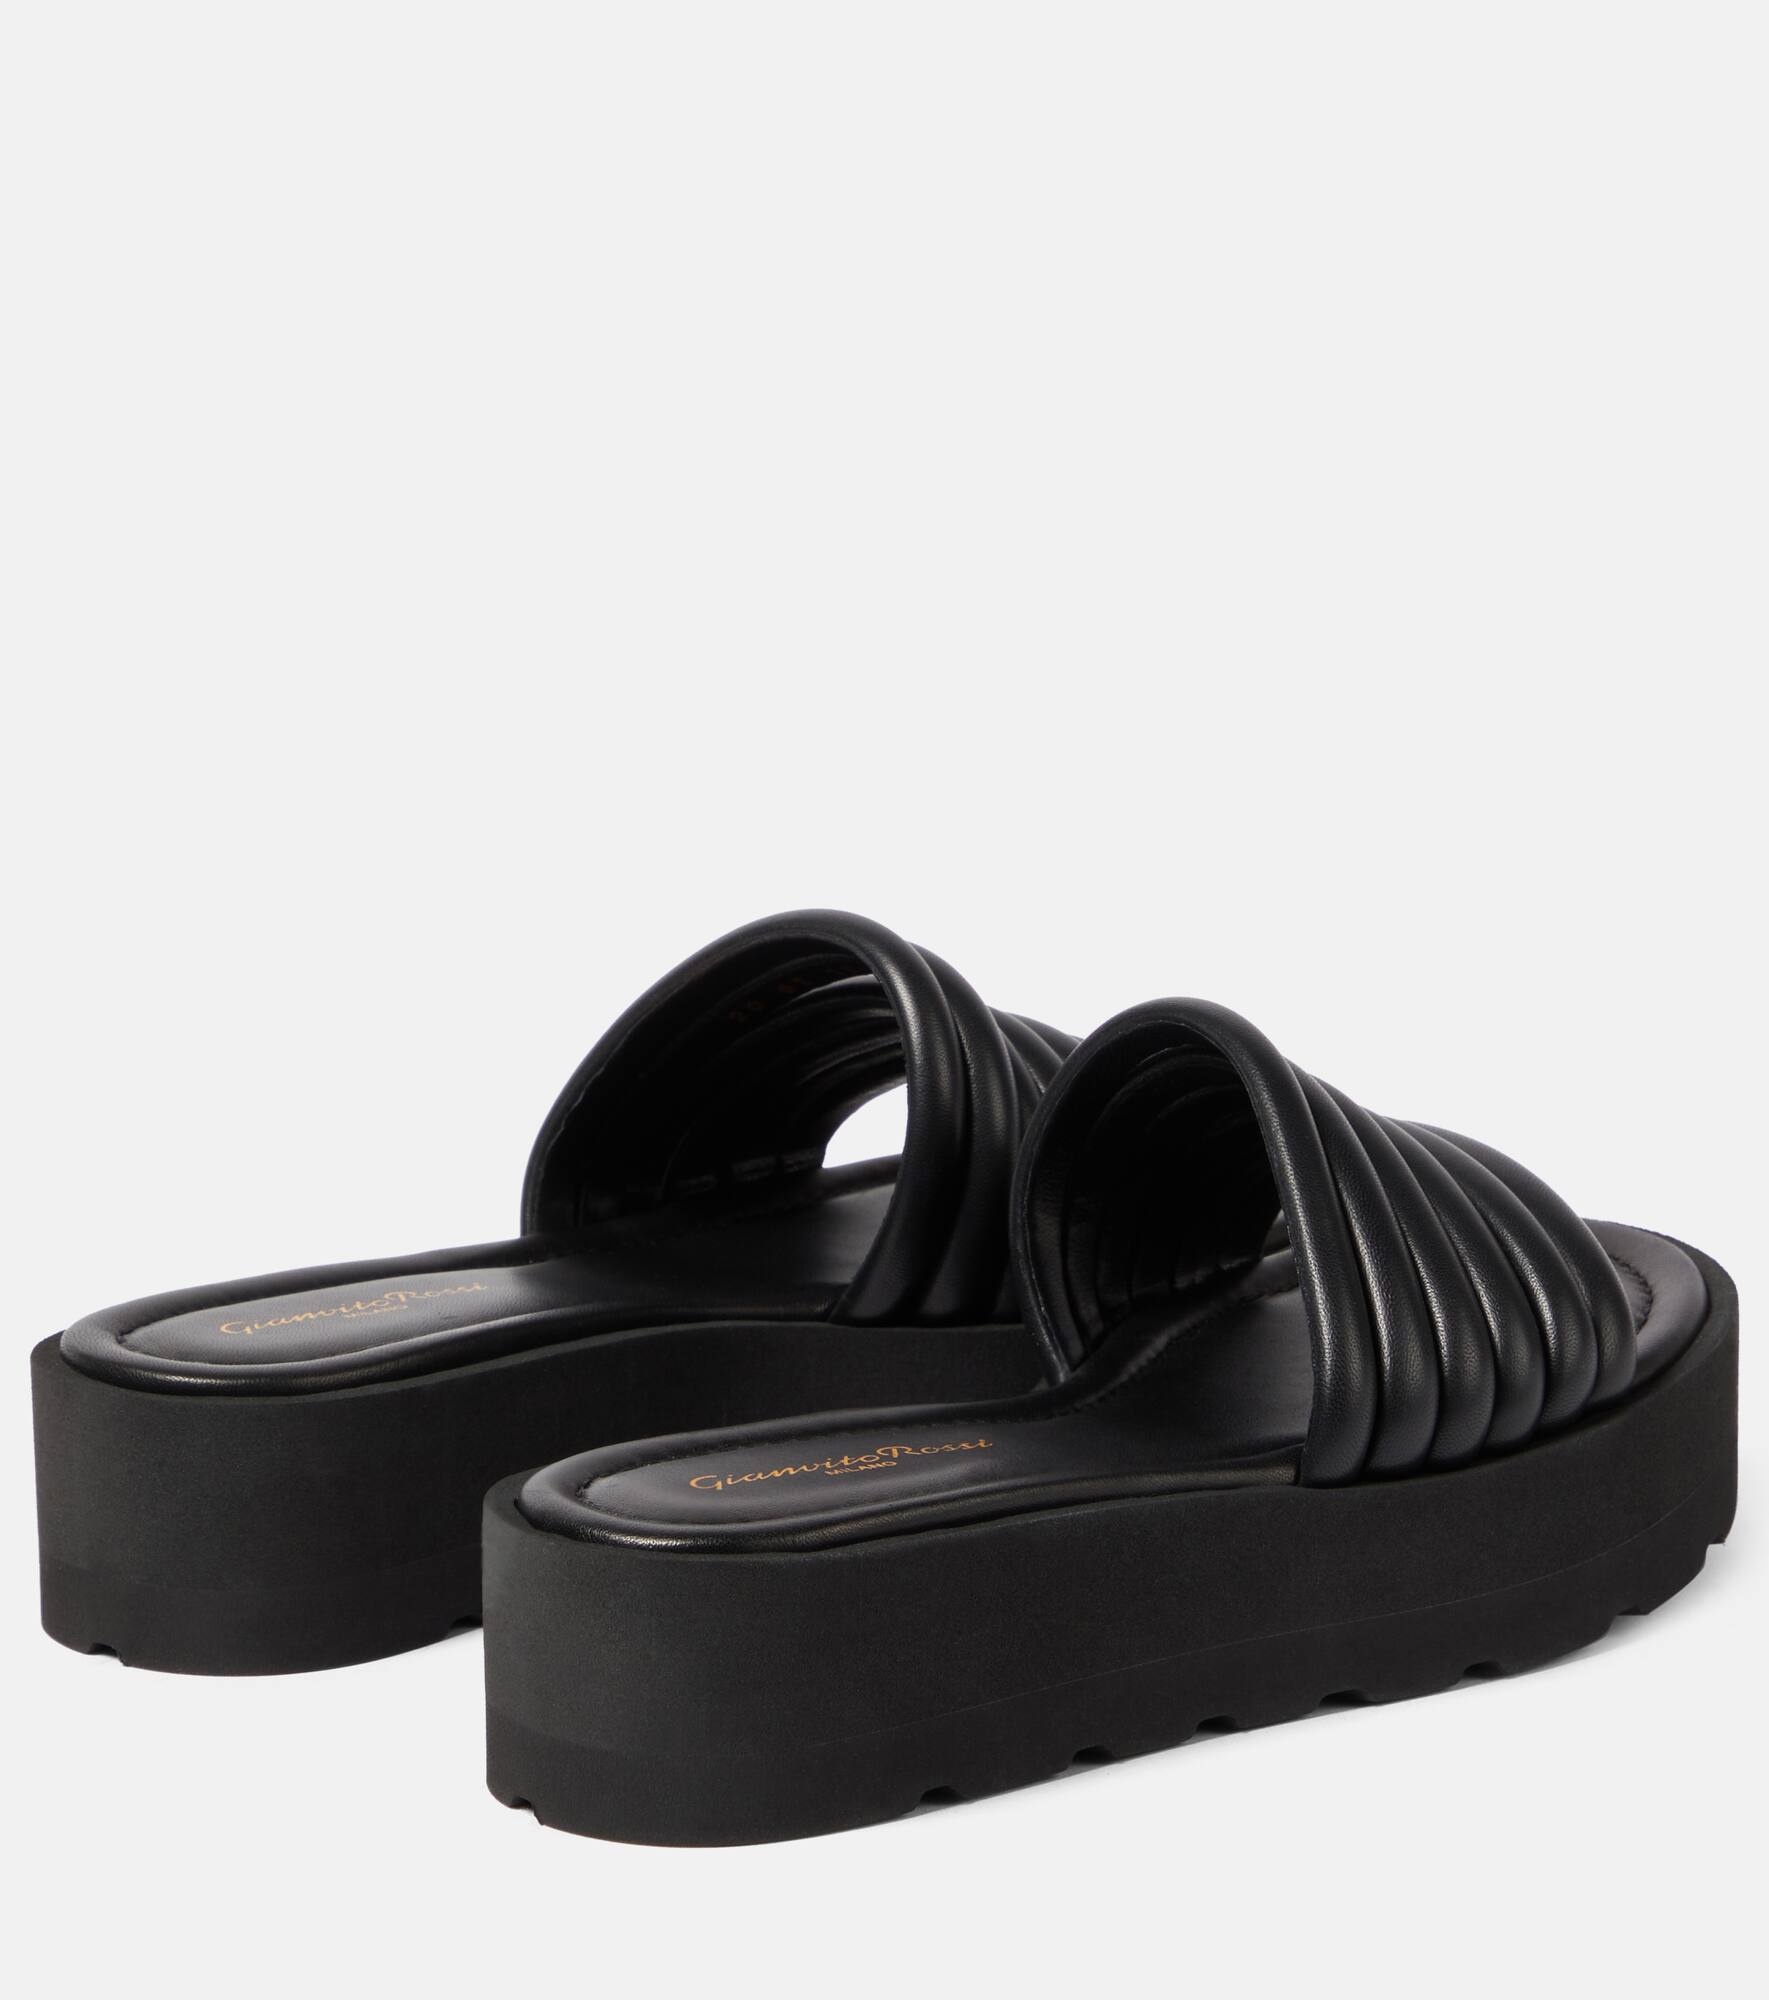 Leather platform sandals - 3